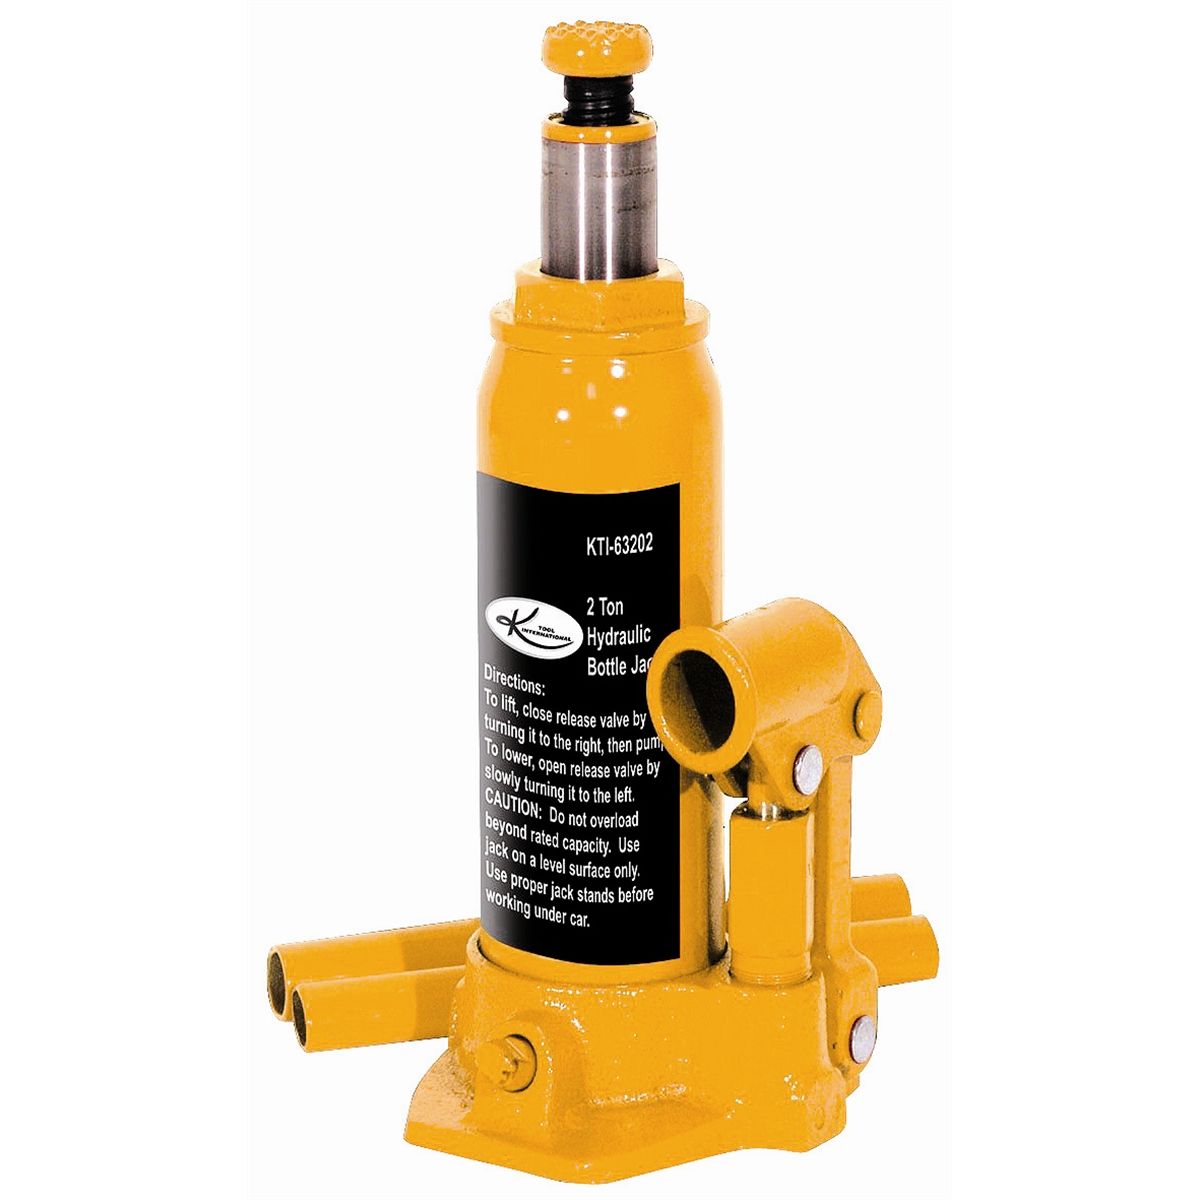 Hydraulic Bottle Jack - 2 Ton Capacity